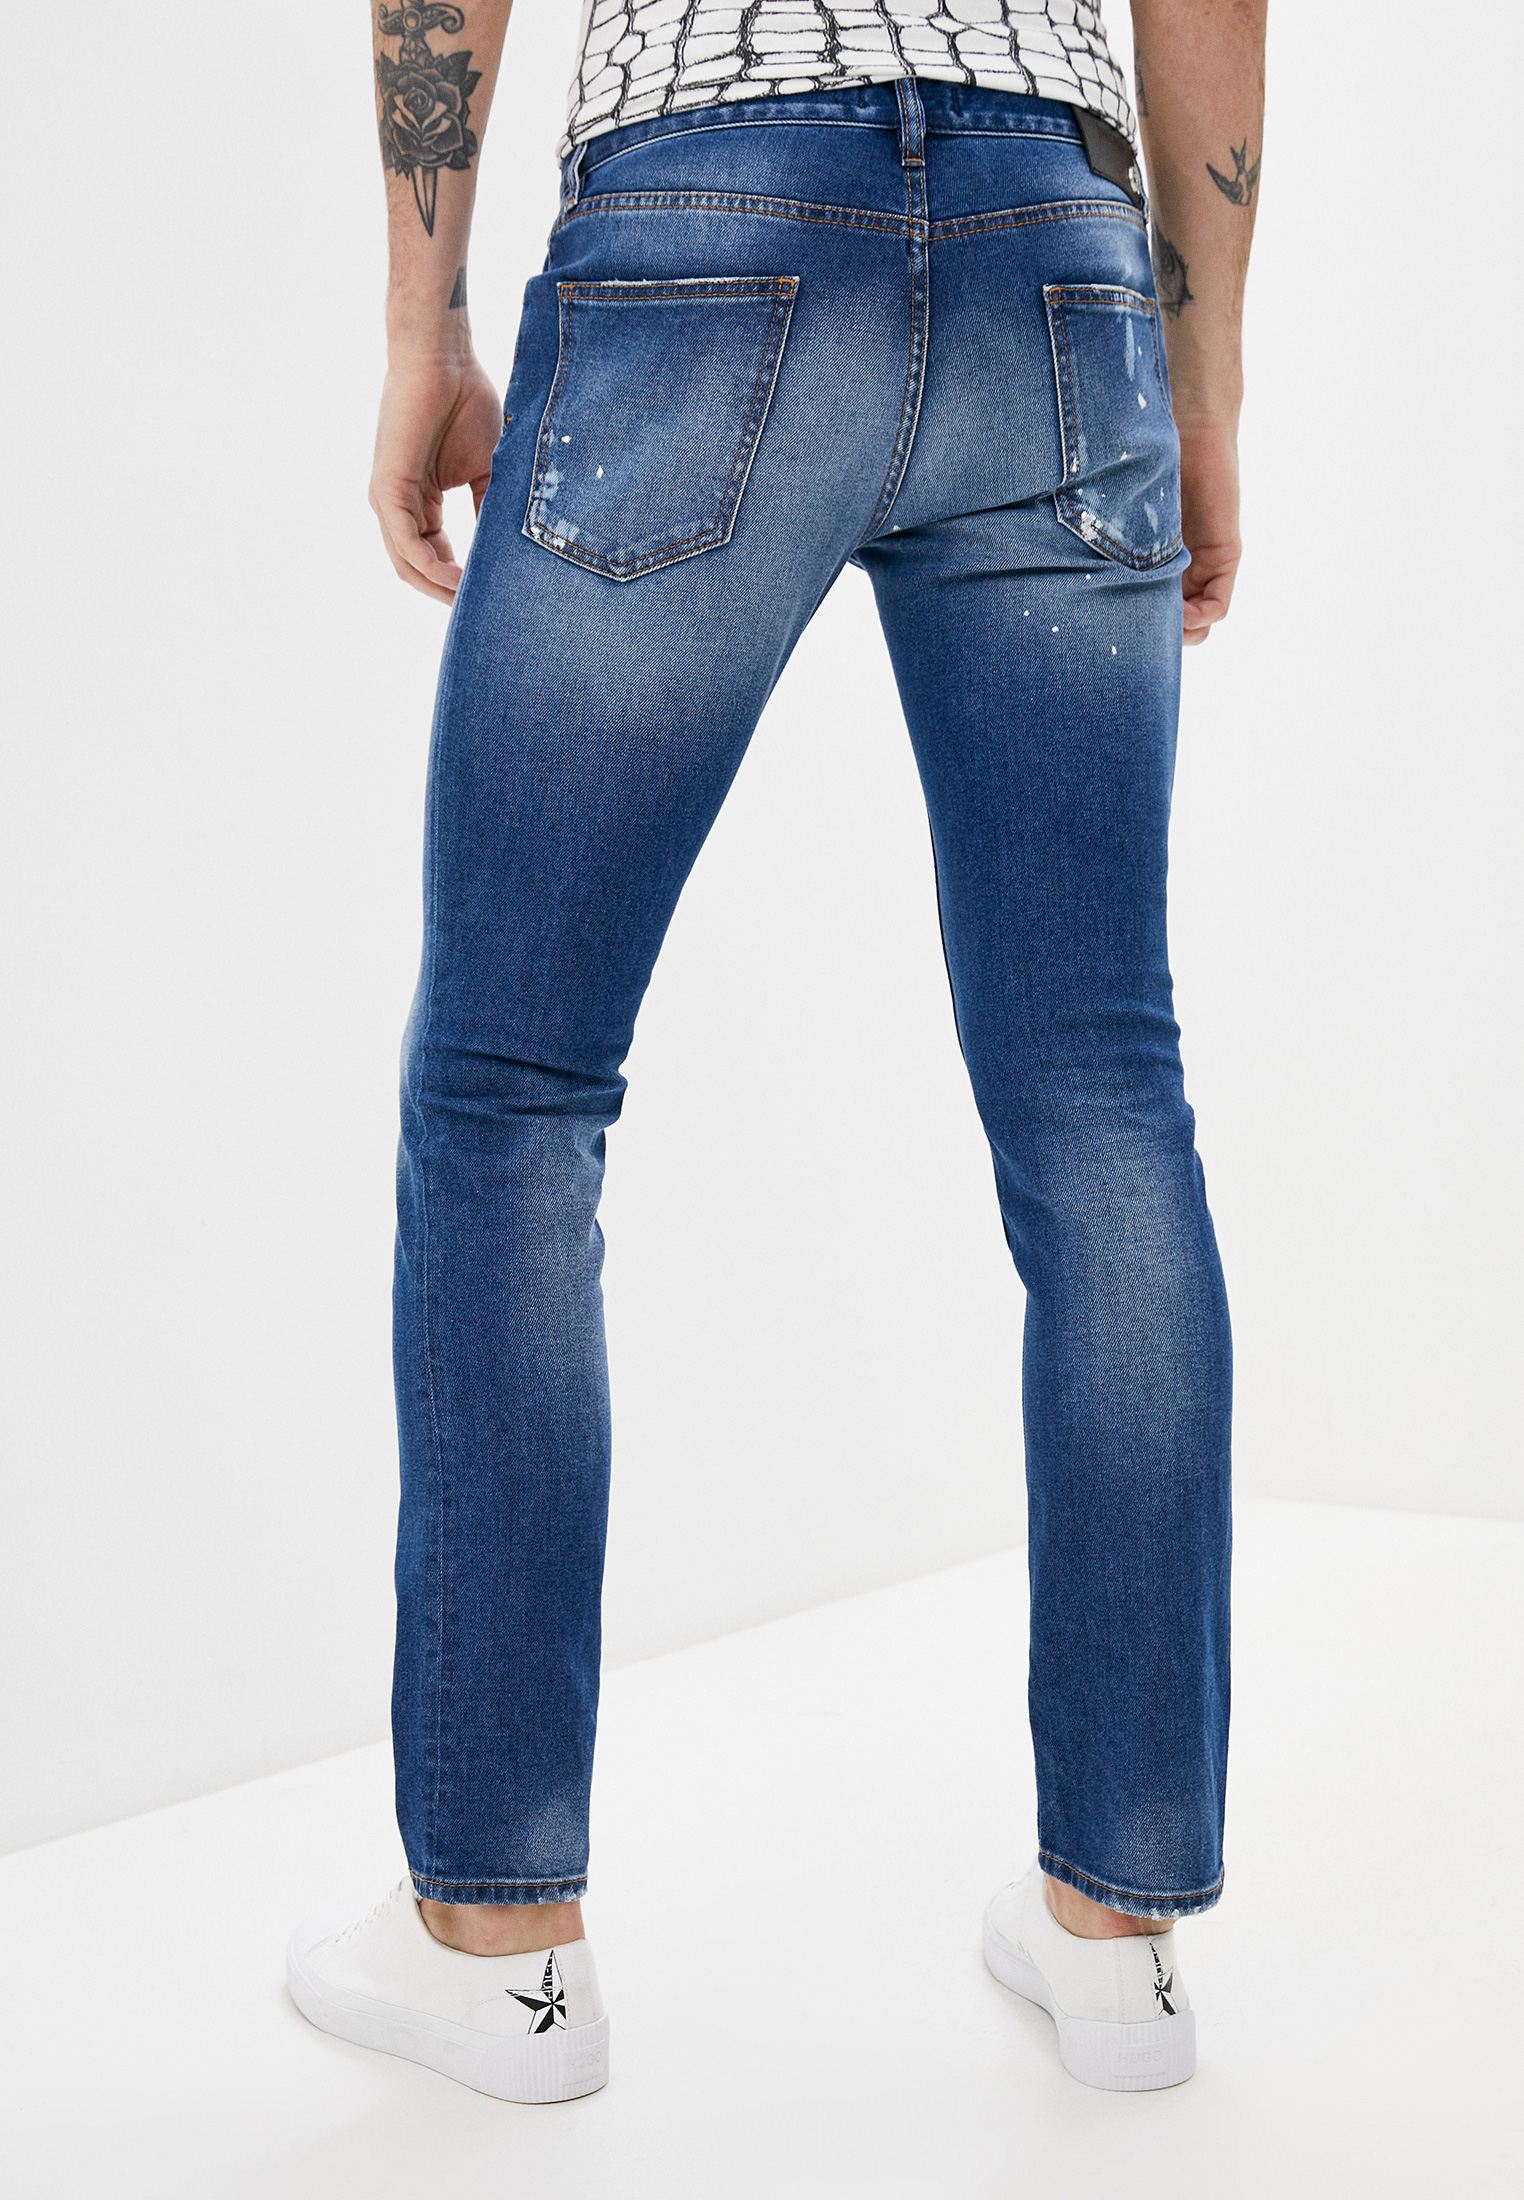 Мужские зауженные джинсы Just Cavalli (Джаст Кавалли) s03la0116: изображение 4